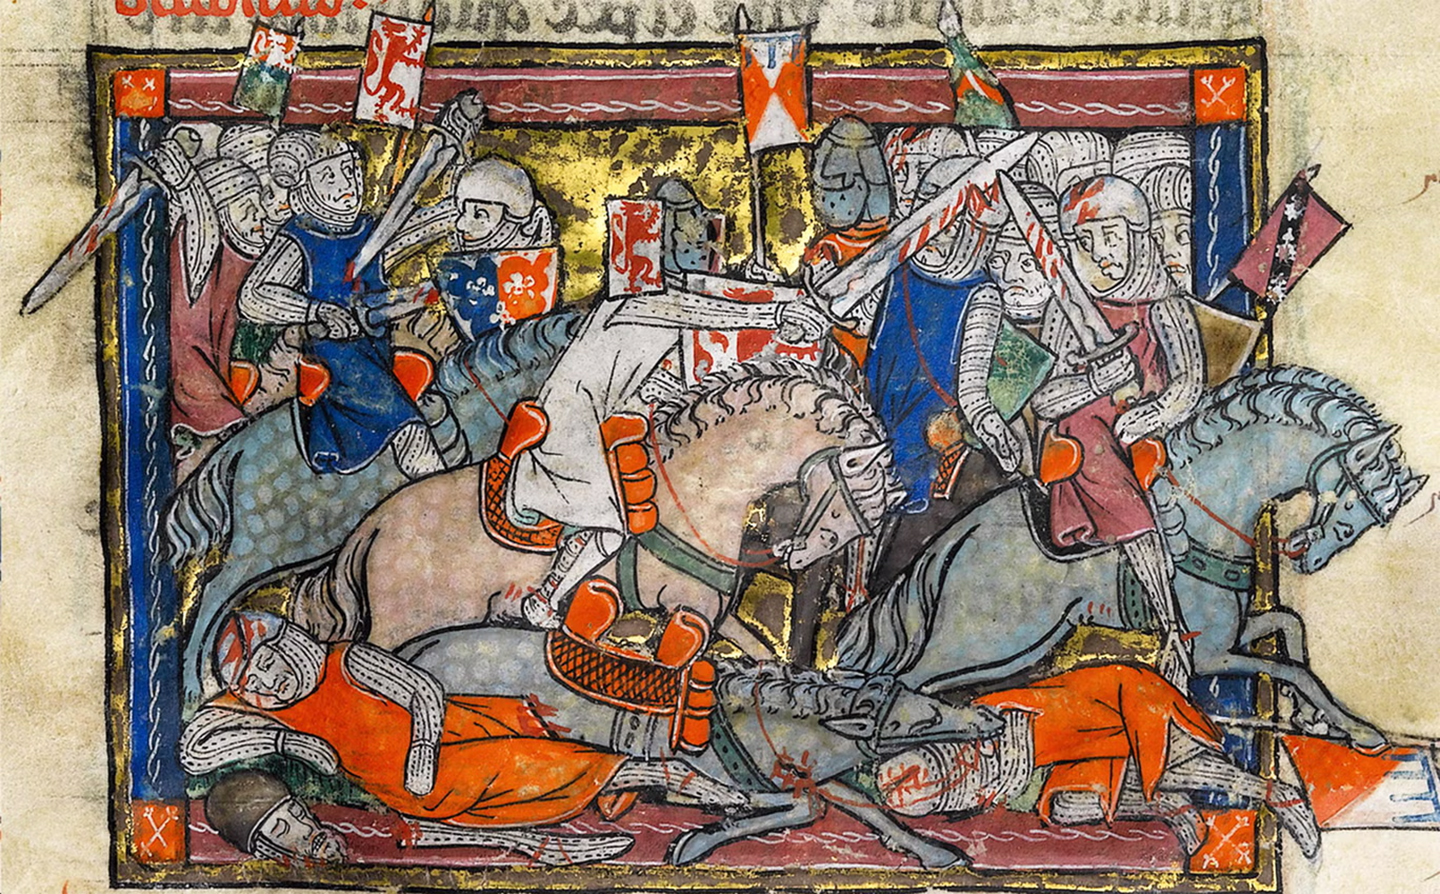 Một hình minh họa từ bản viết thảo tay có hình vẽ “Rochefoucauld Grail” (Chén Thánh Rochefoucauld), vào thế kỷ 14. (Ảnh: Tư liệu công cộng)